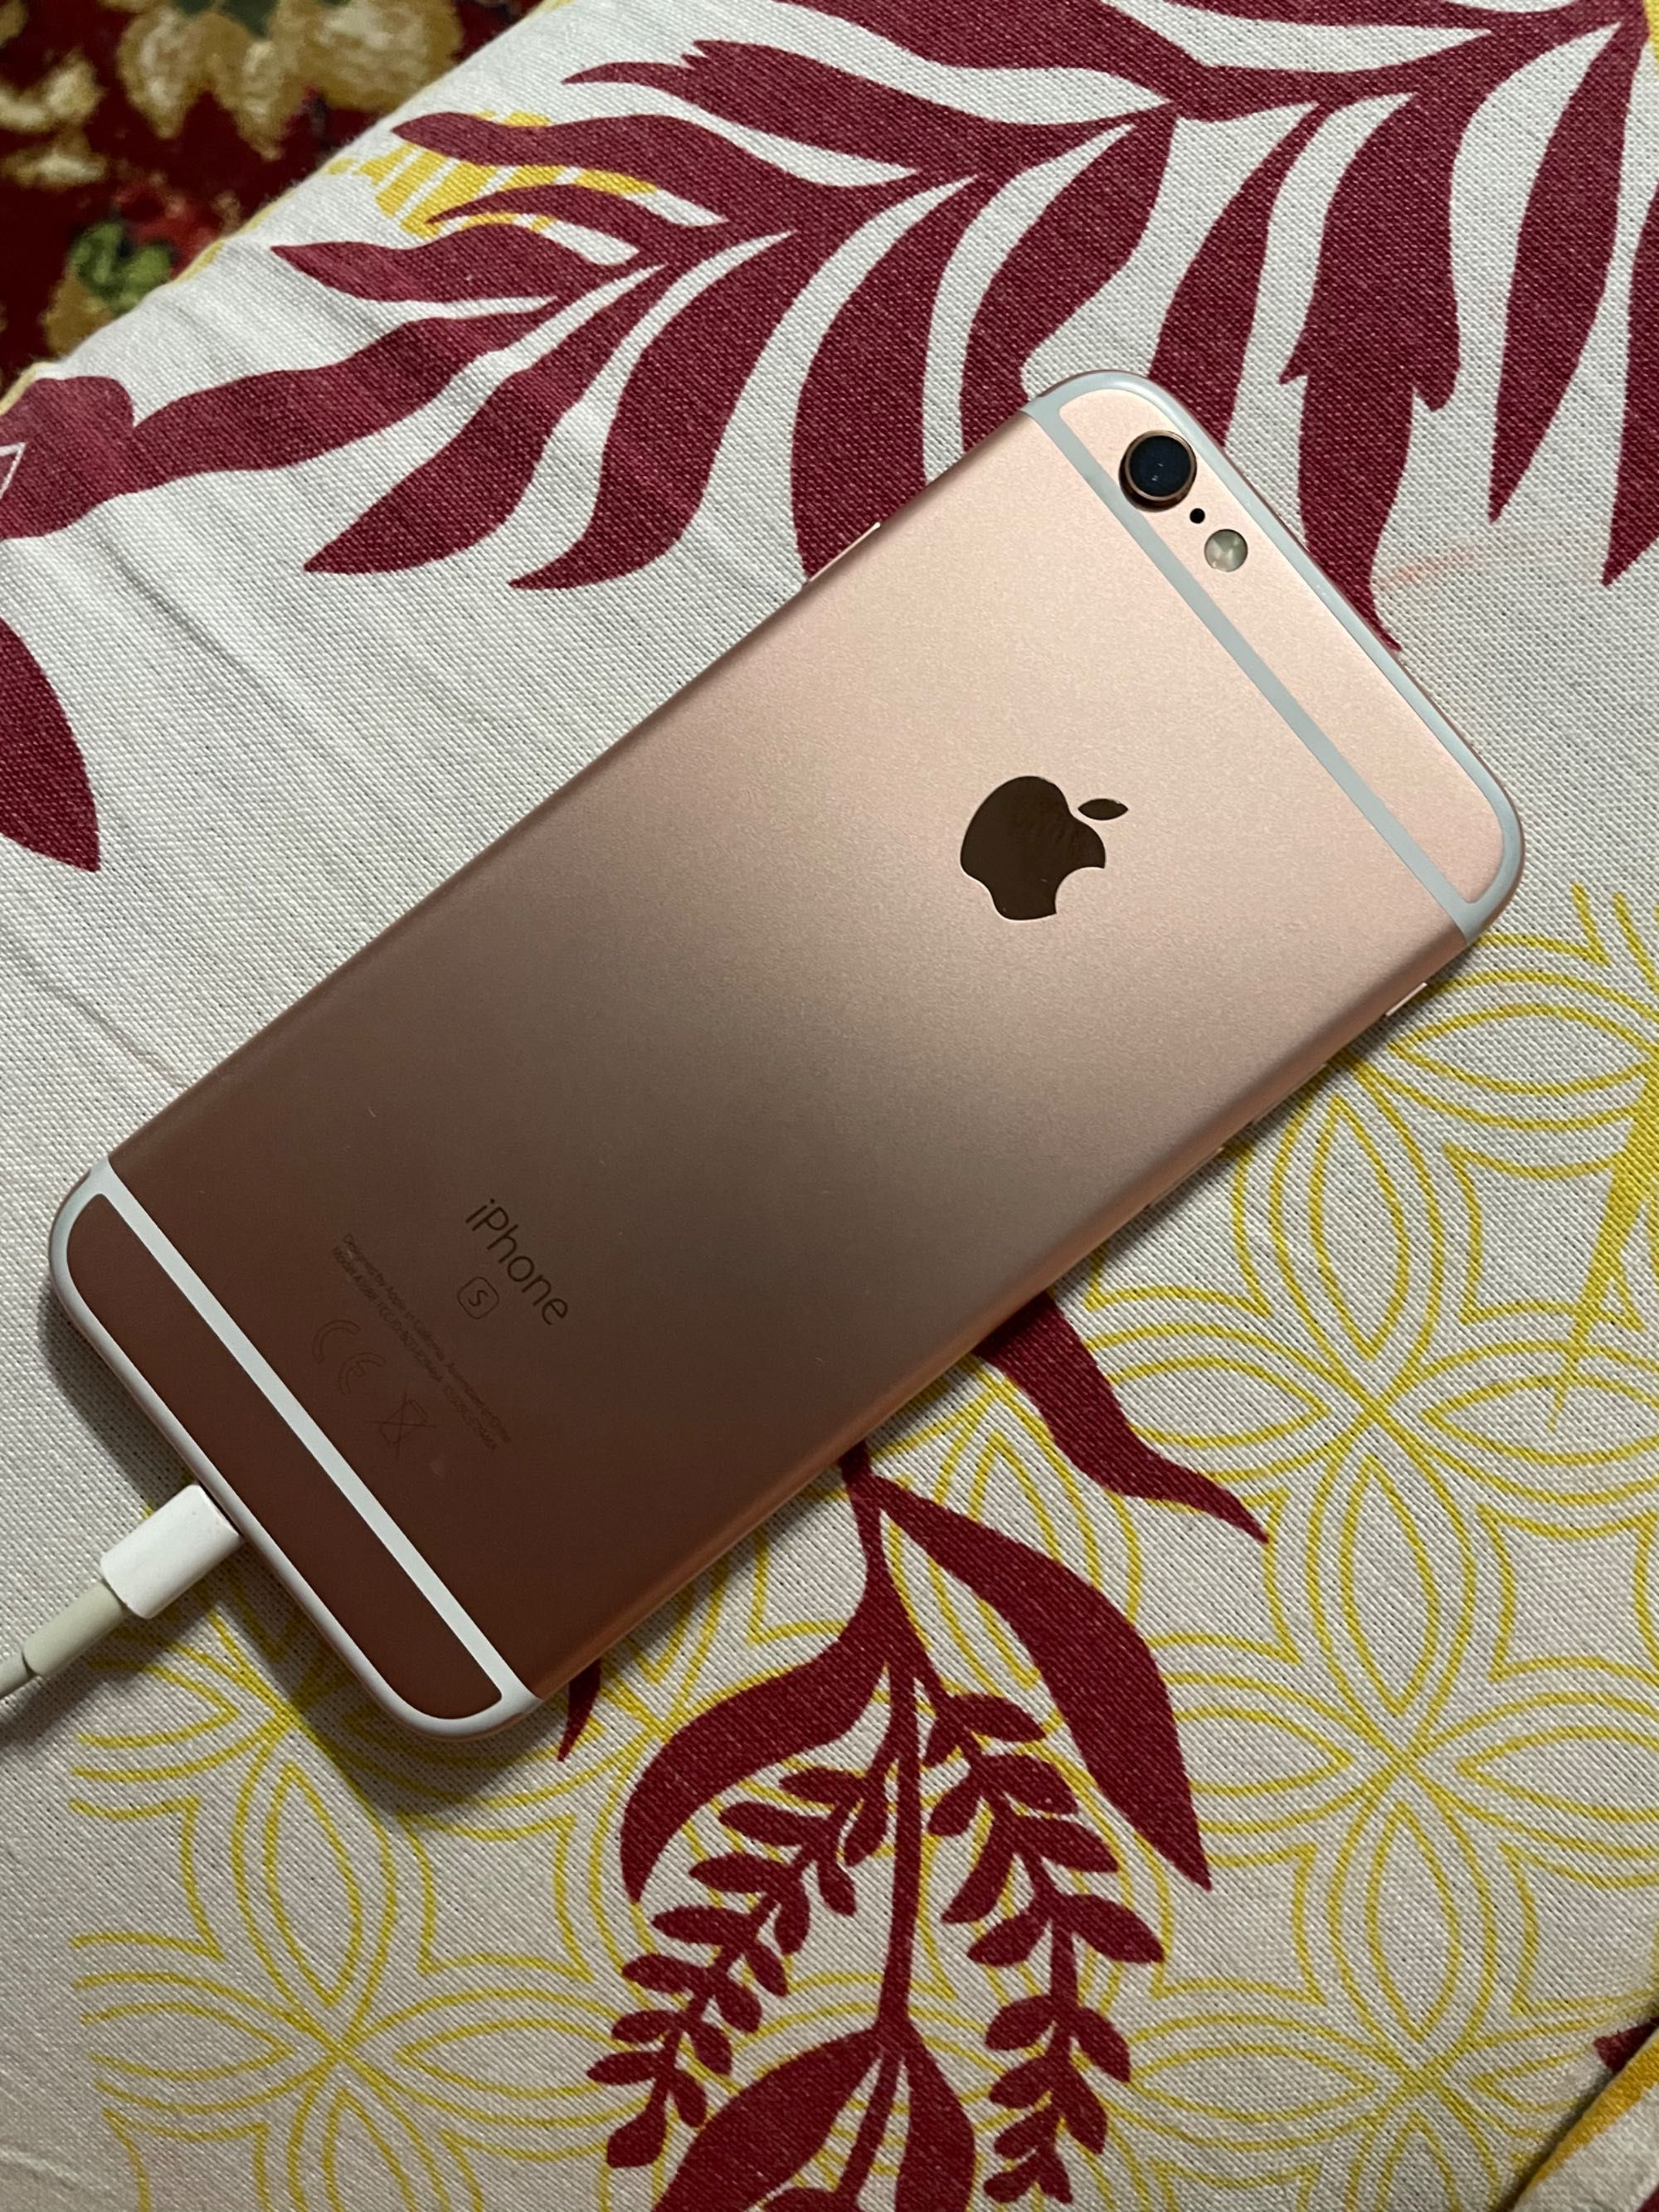 iPhone 6s rose gold 128 gb